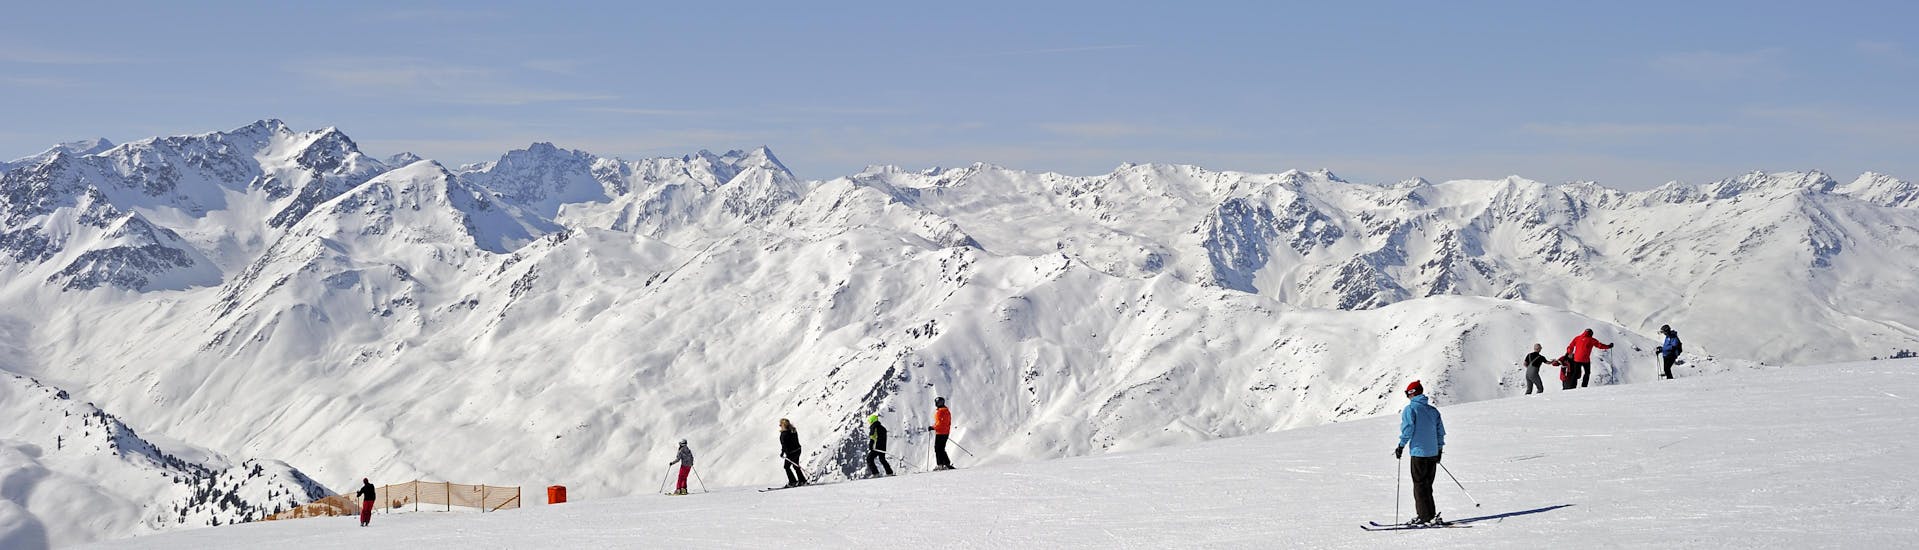 Adultos y niños esquiando en la estación de esquí de Axamer Lizum.